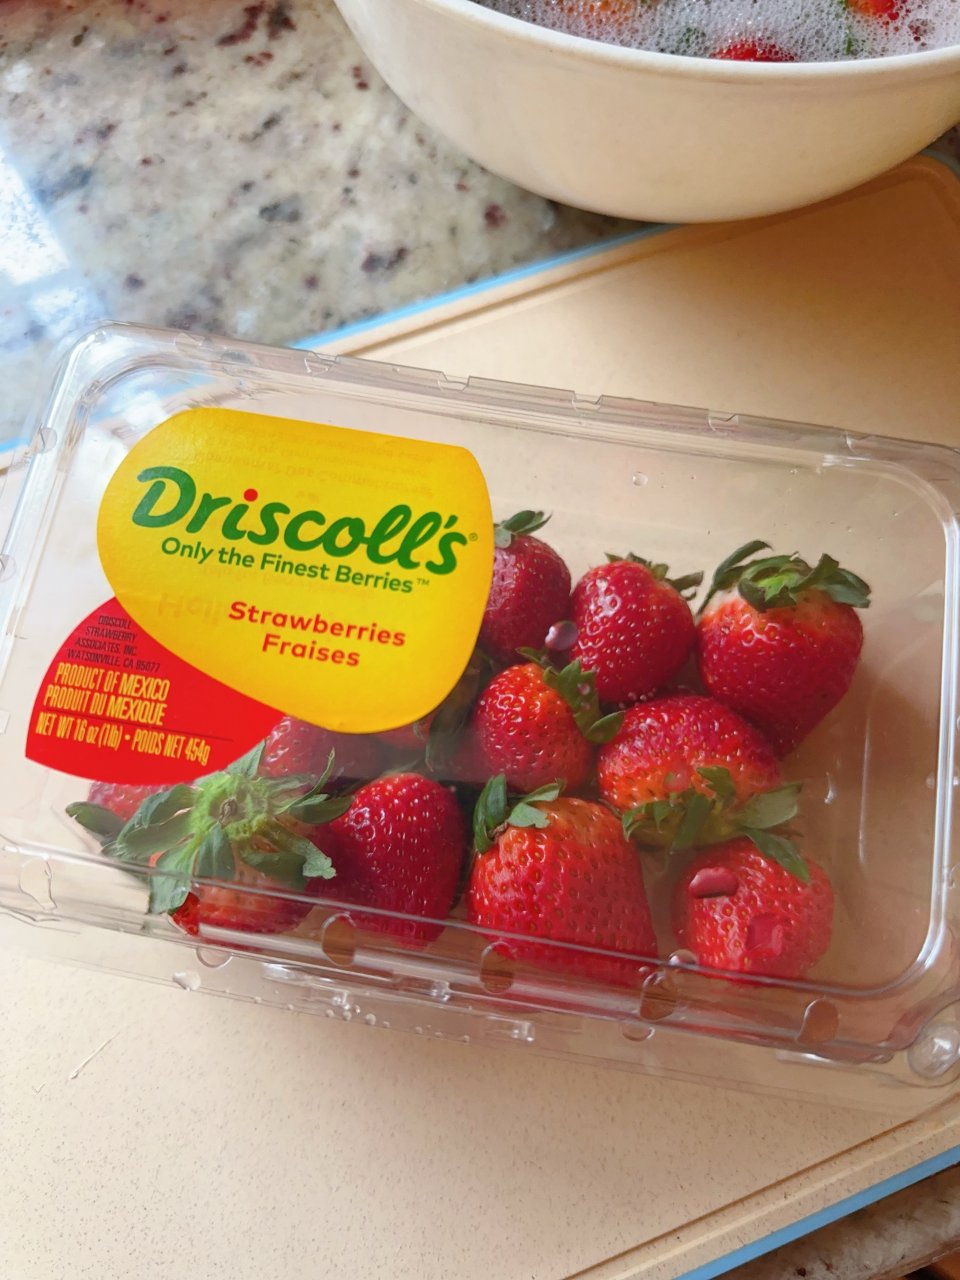 可口多汁Driscoll‘s草莓🍓...